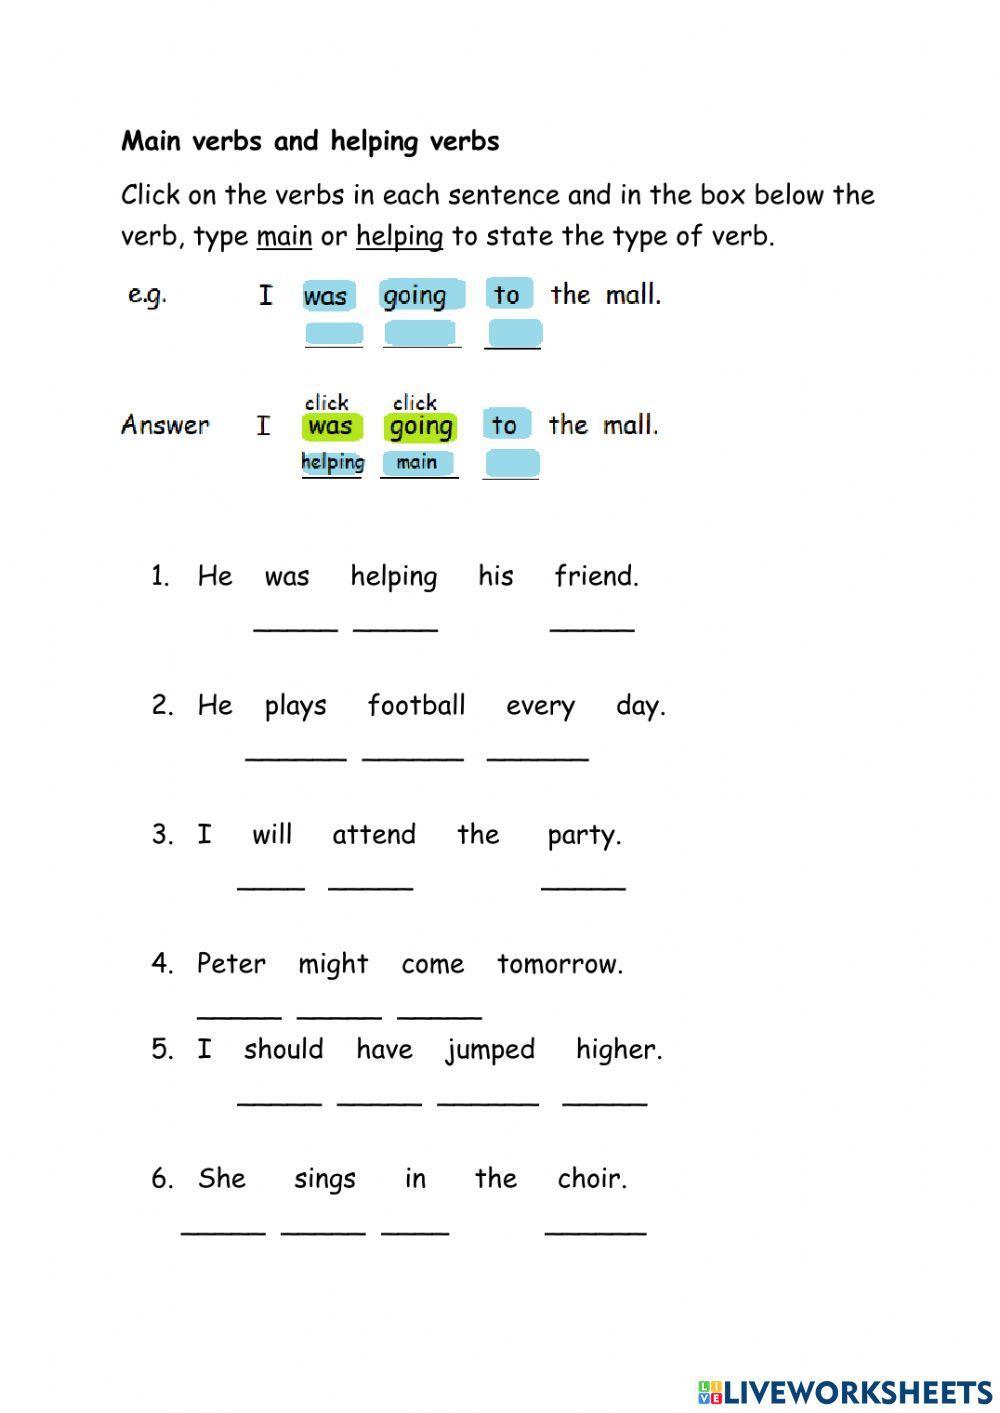 Main verbs and helping verbs